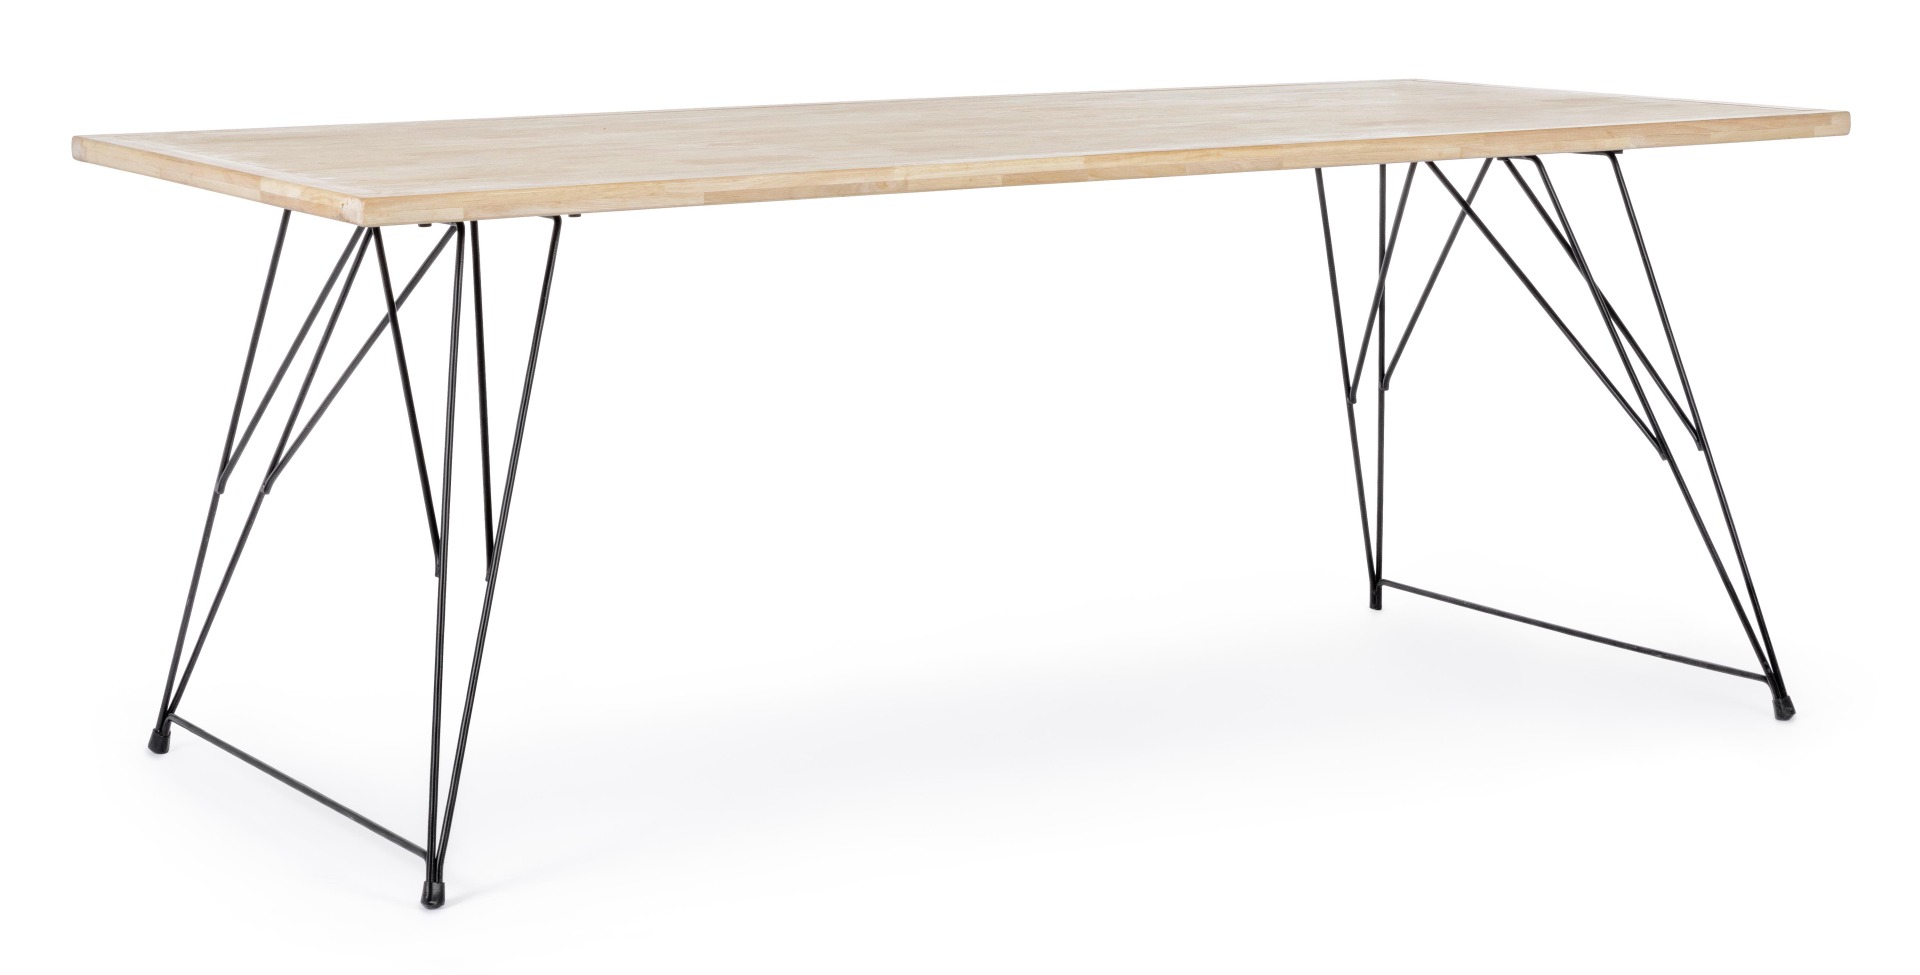 Der Esstisch District überzeugt mit seinem moderndem Design. Gefertigt wurde er aus Kautschukholz, welches einen natürlichen Farbton besitzt. Das Gestell des Tisches ist aus Metall und ist in eine schwarze Farbe. Der Tisch besitzt eine Breite von 200 cm.